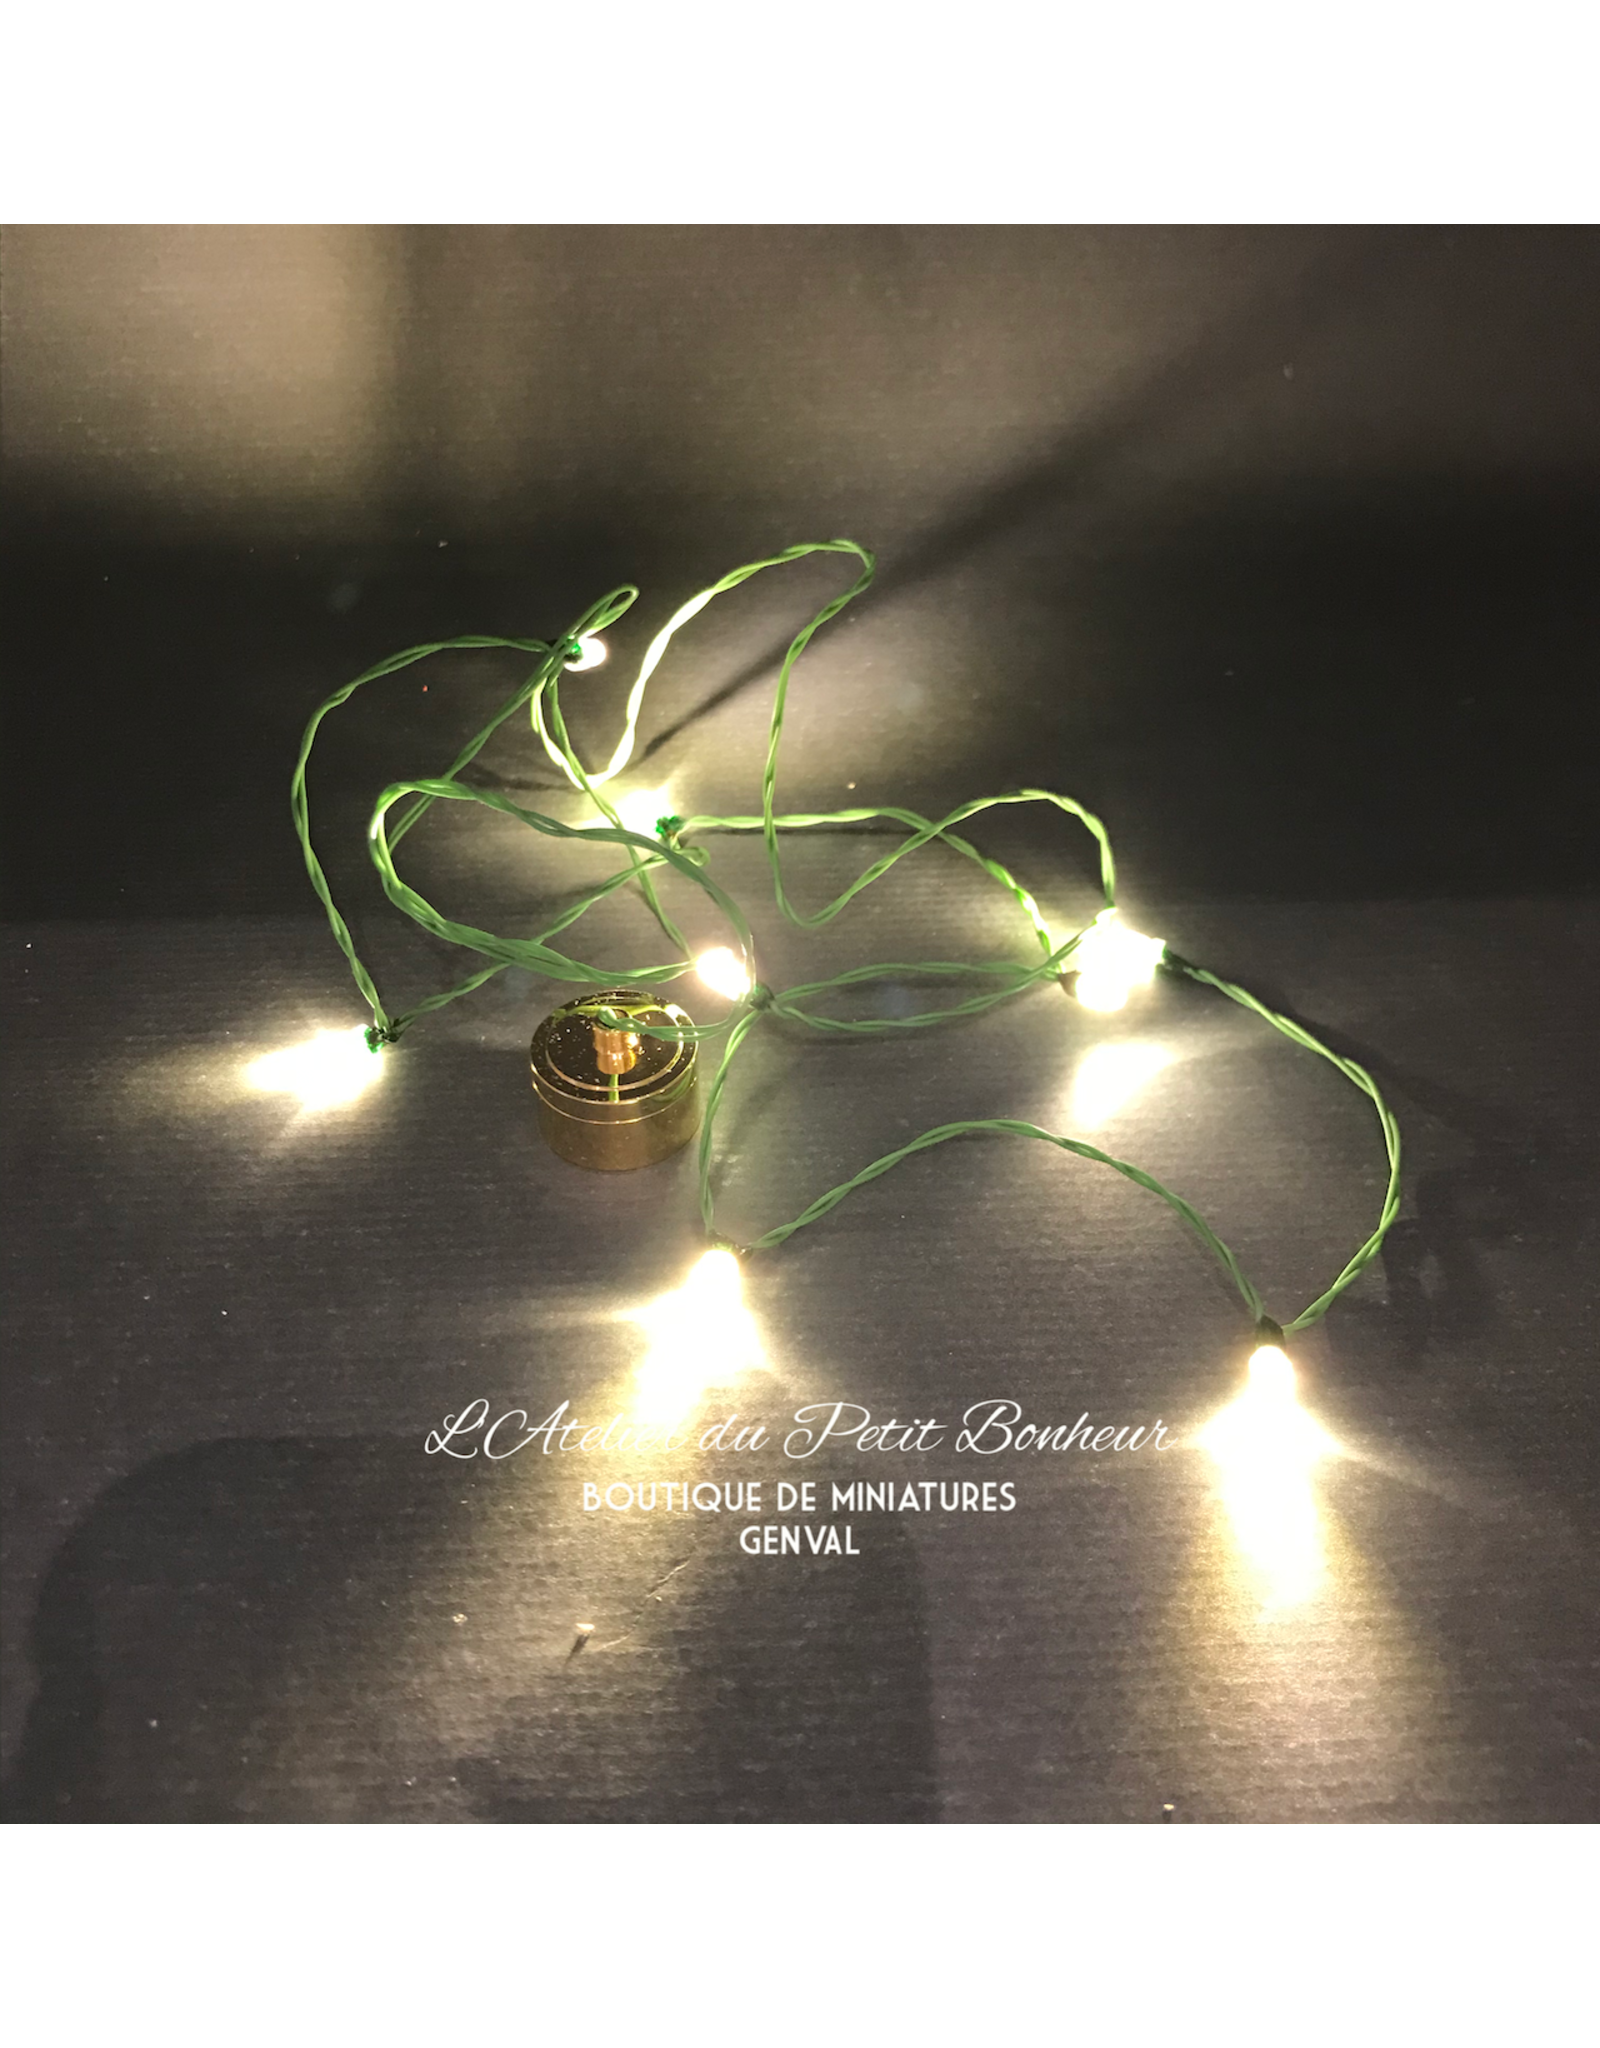 Guirlande de Noël LED blanche (8 ampoules) miniature 1:12